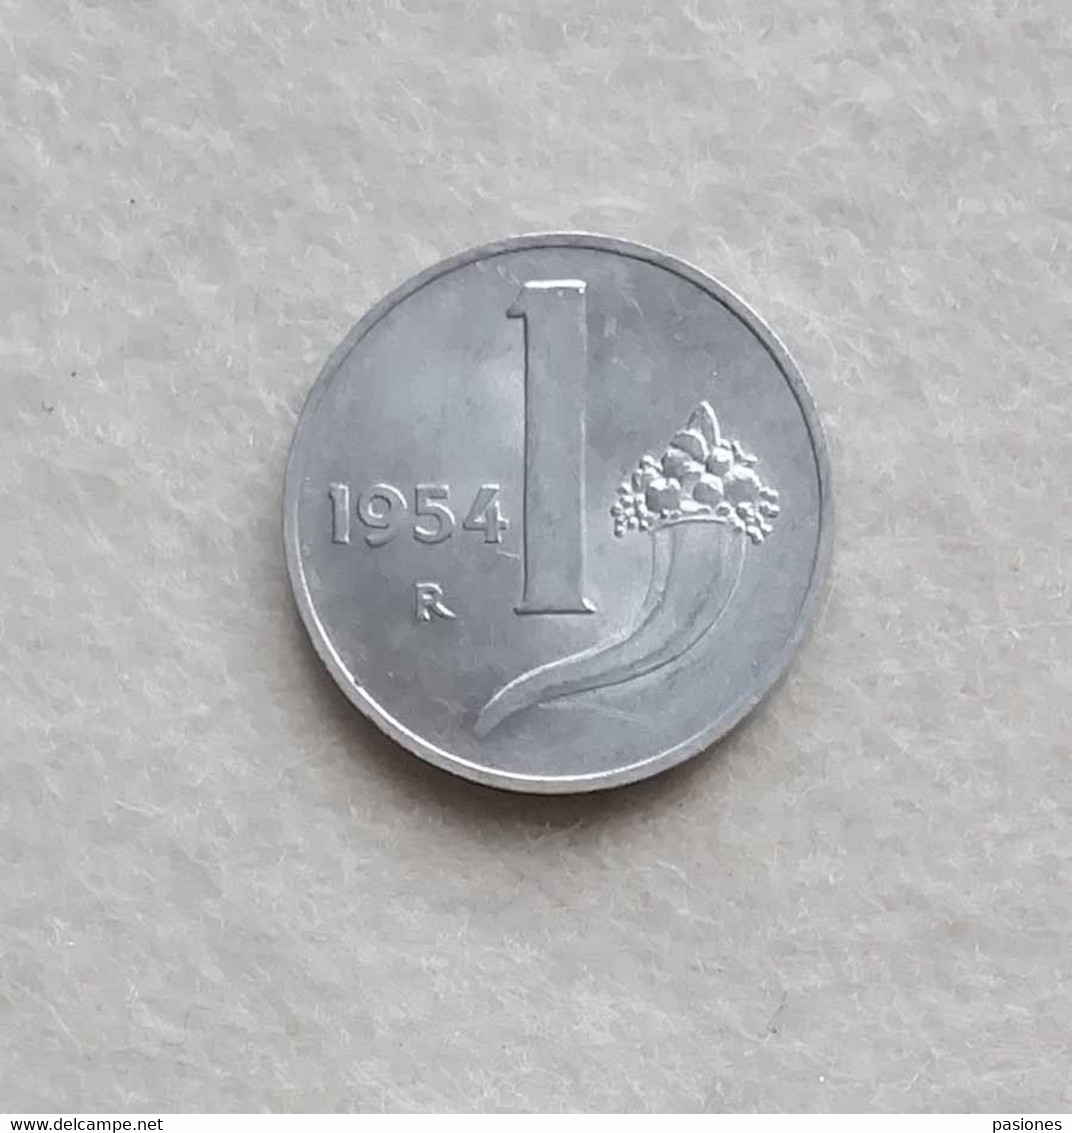 Repubblica Italiana 1 Lira 1954 - 1 Lira